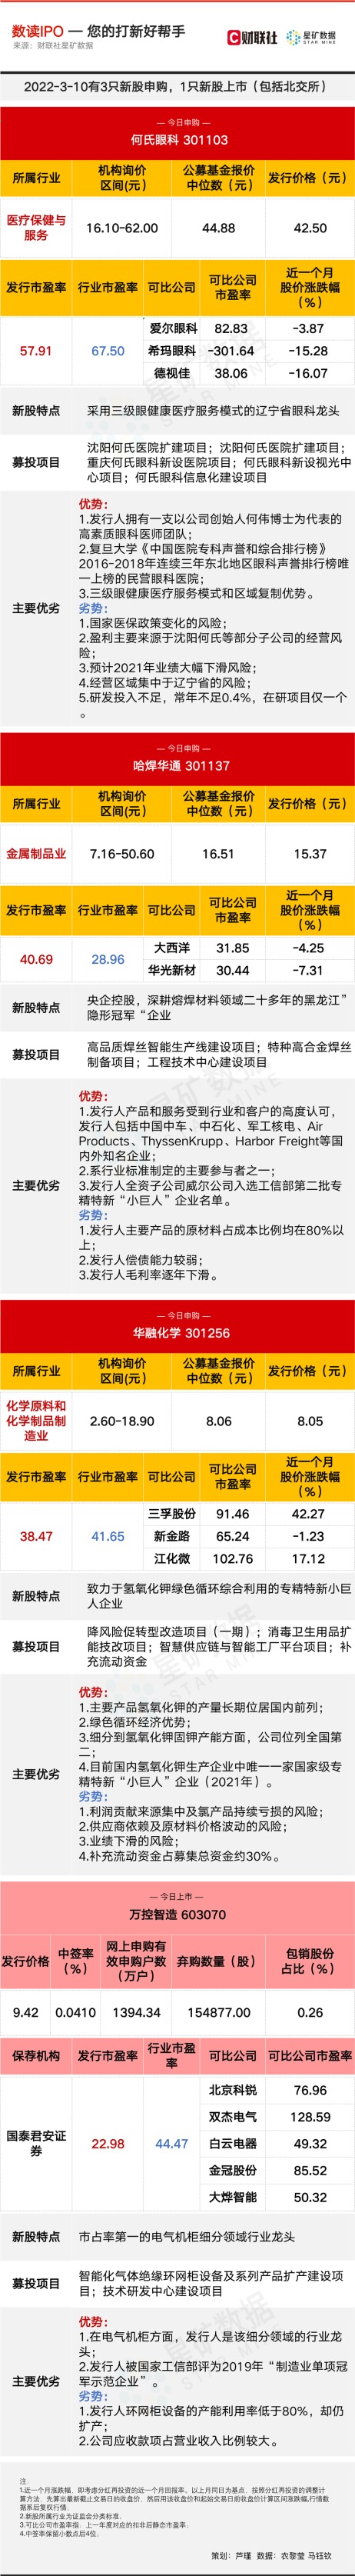 【数读IPO】刘永好绝对控股企业今申购 电气机柜行业龙头上市